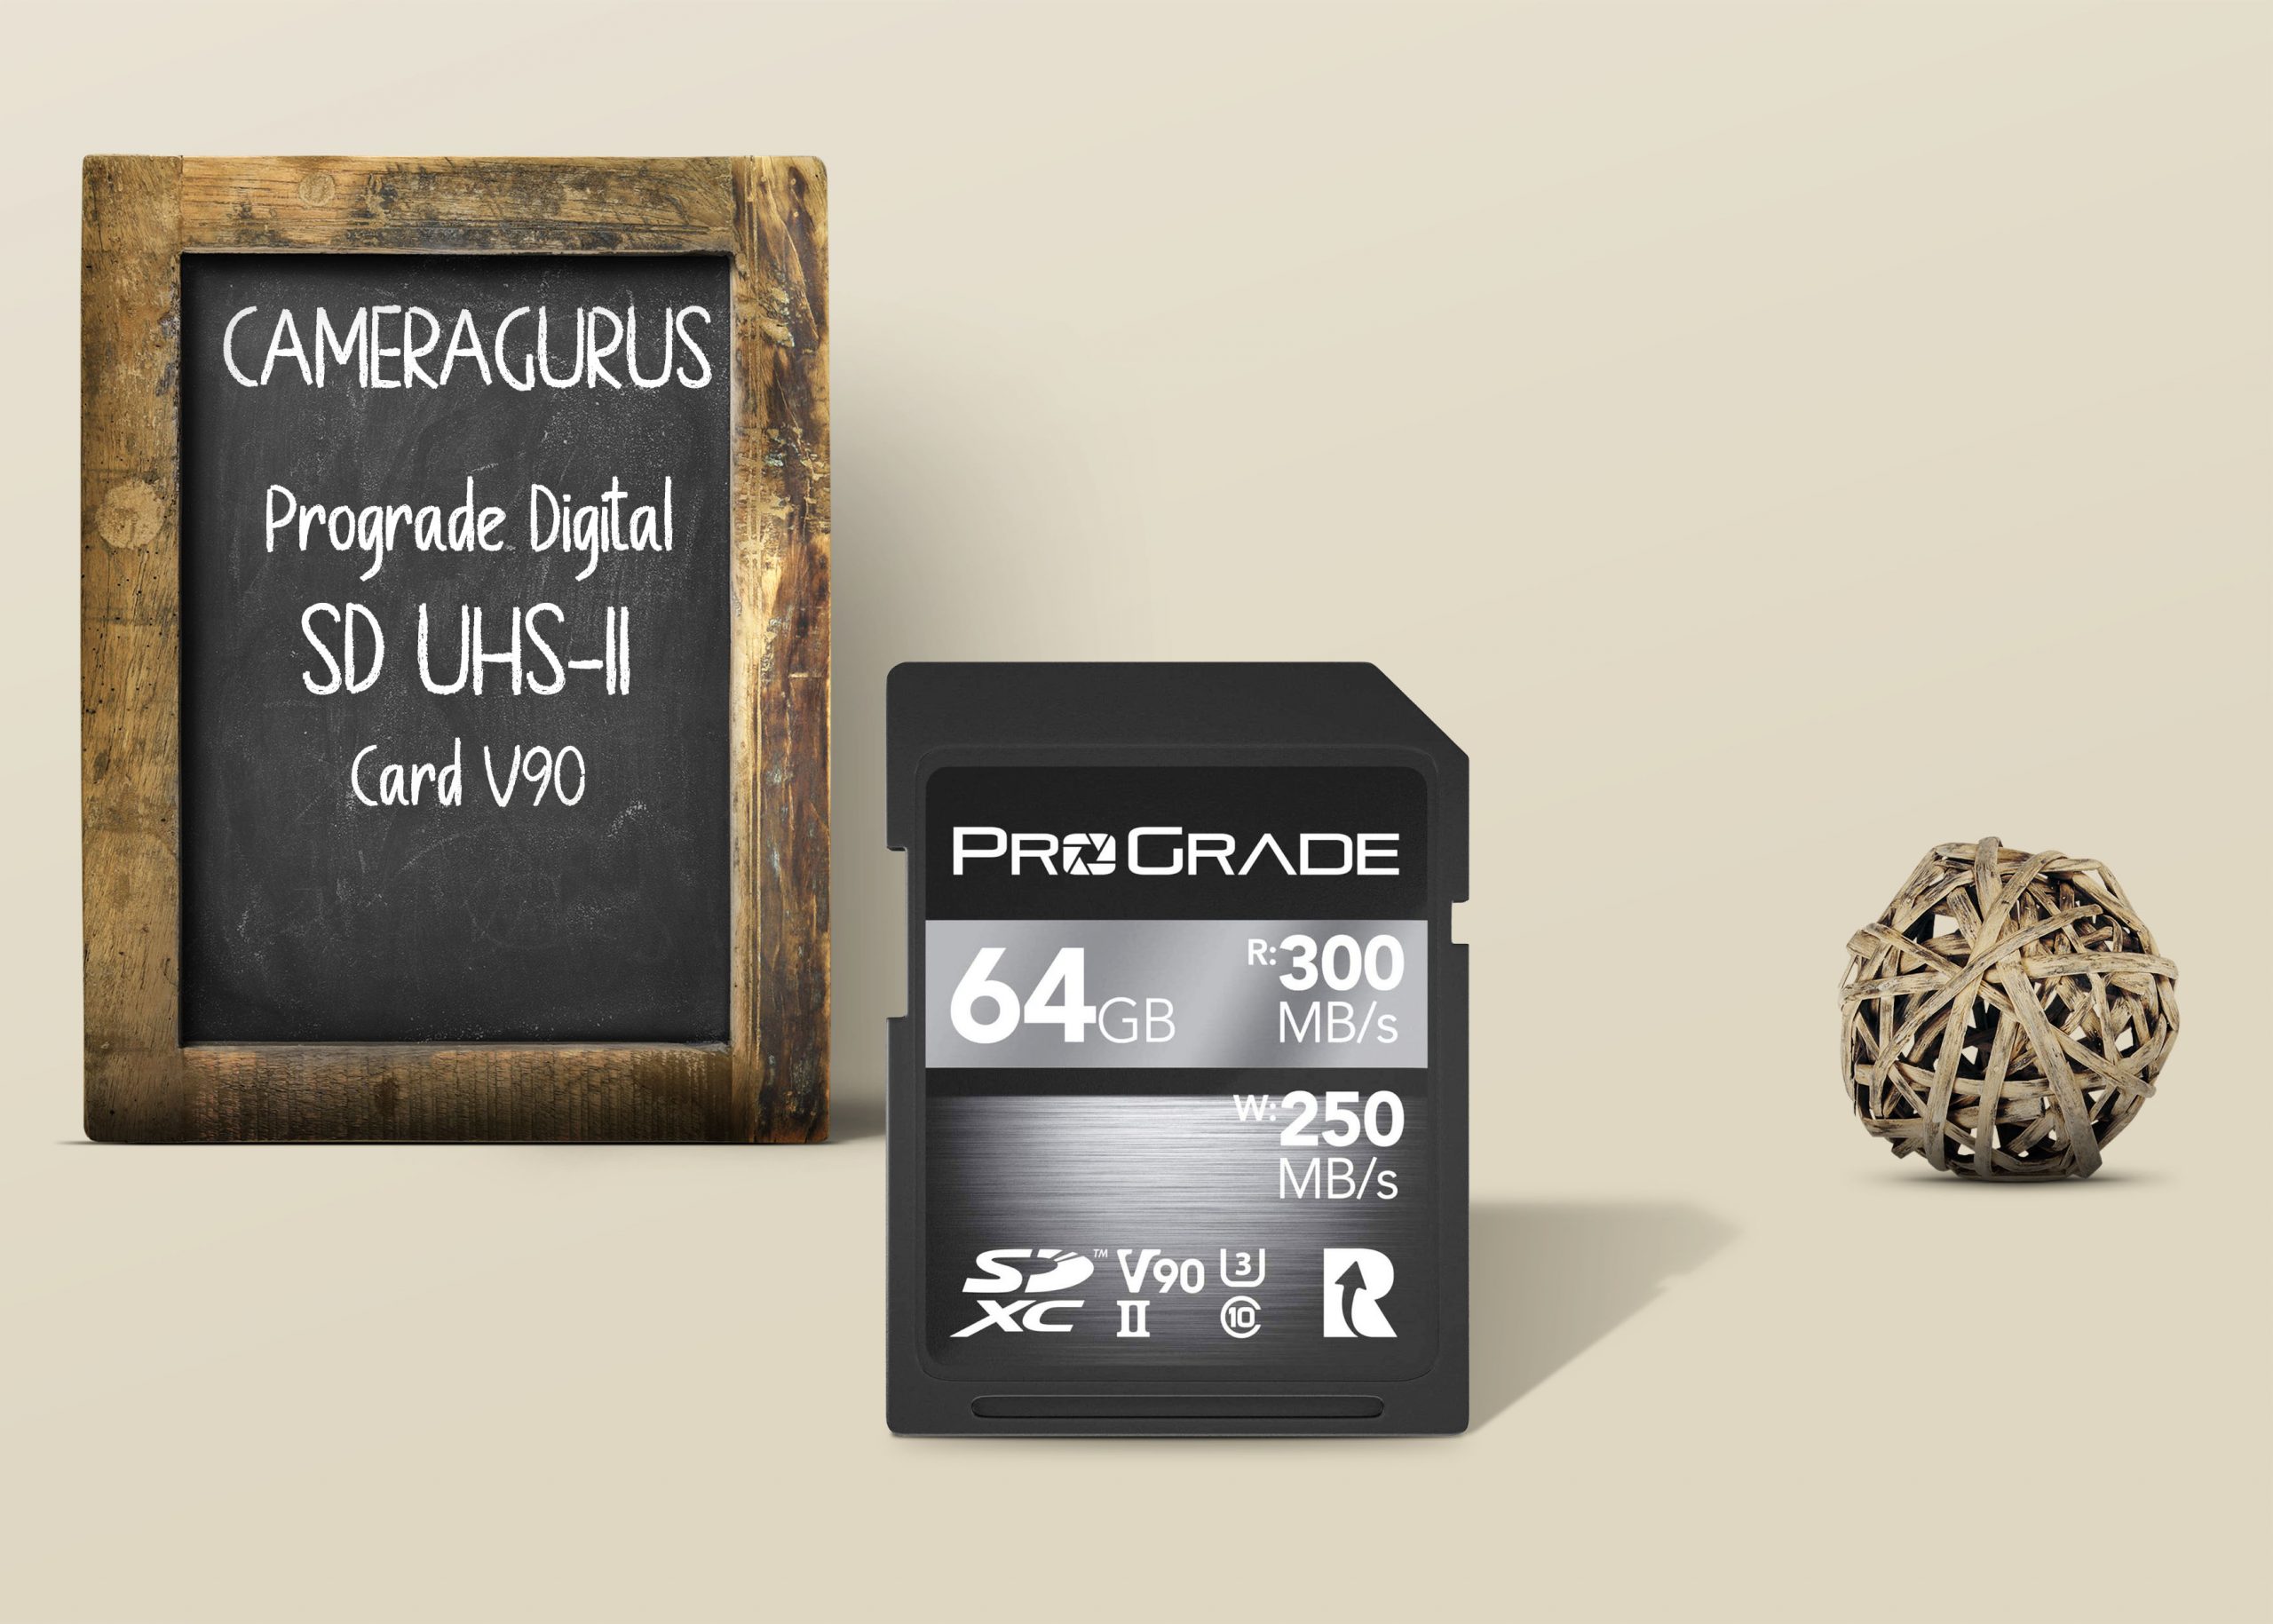 Prograde Digital SD UHS II Card V90